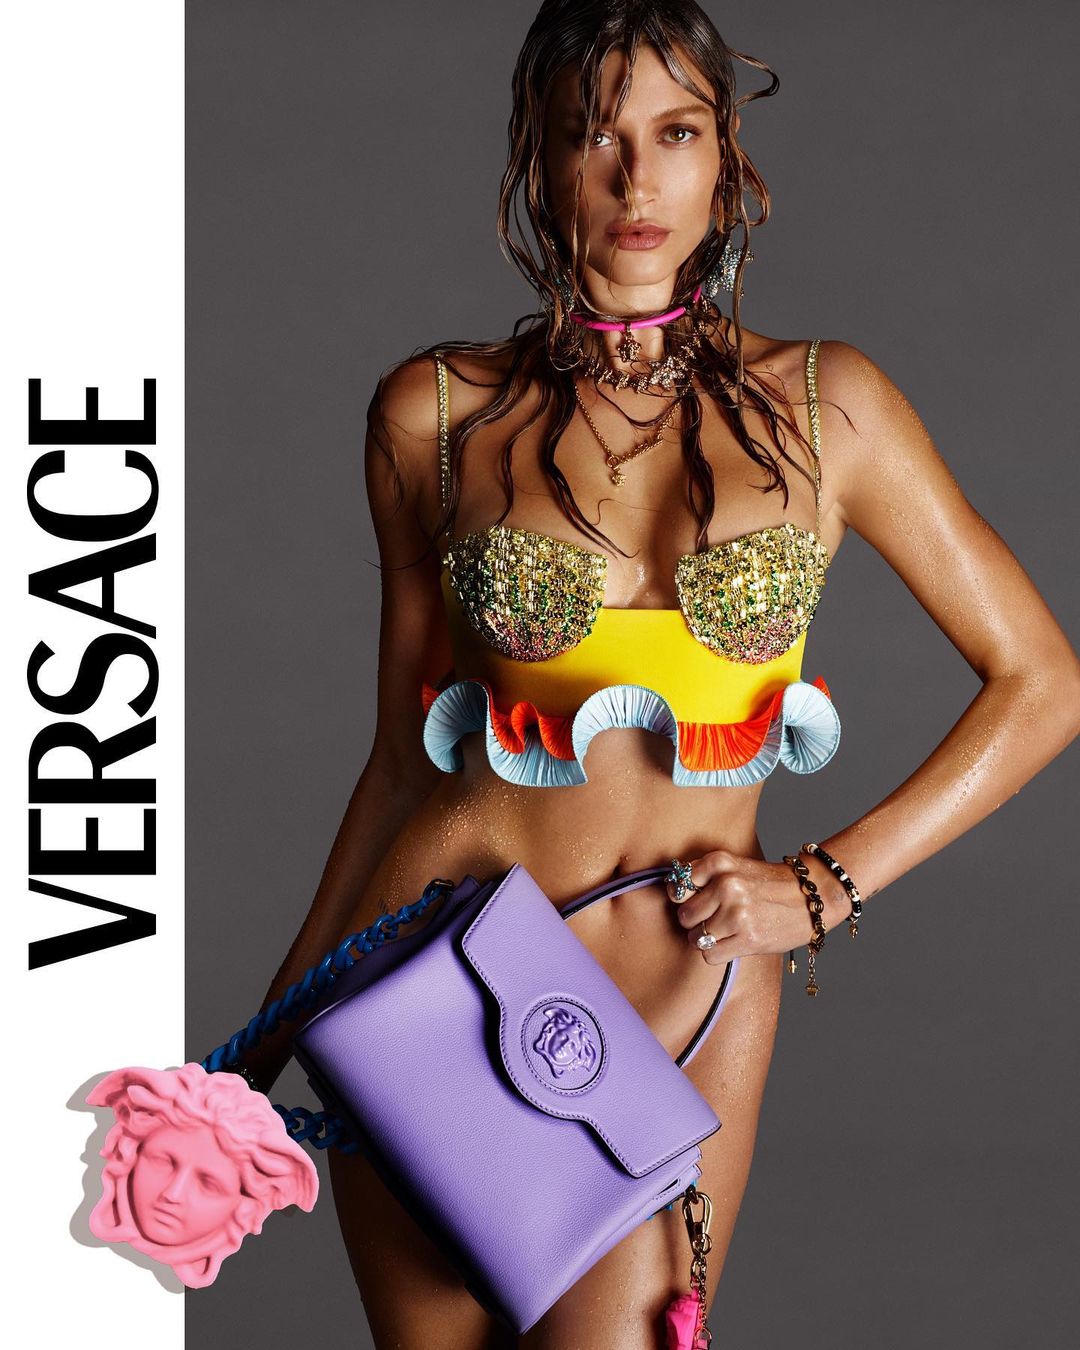 Хейли Бибер без трусиков позировала для новой рекламной кампании Versace